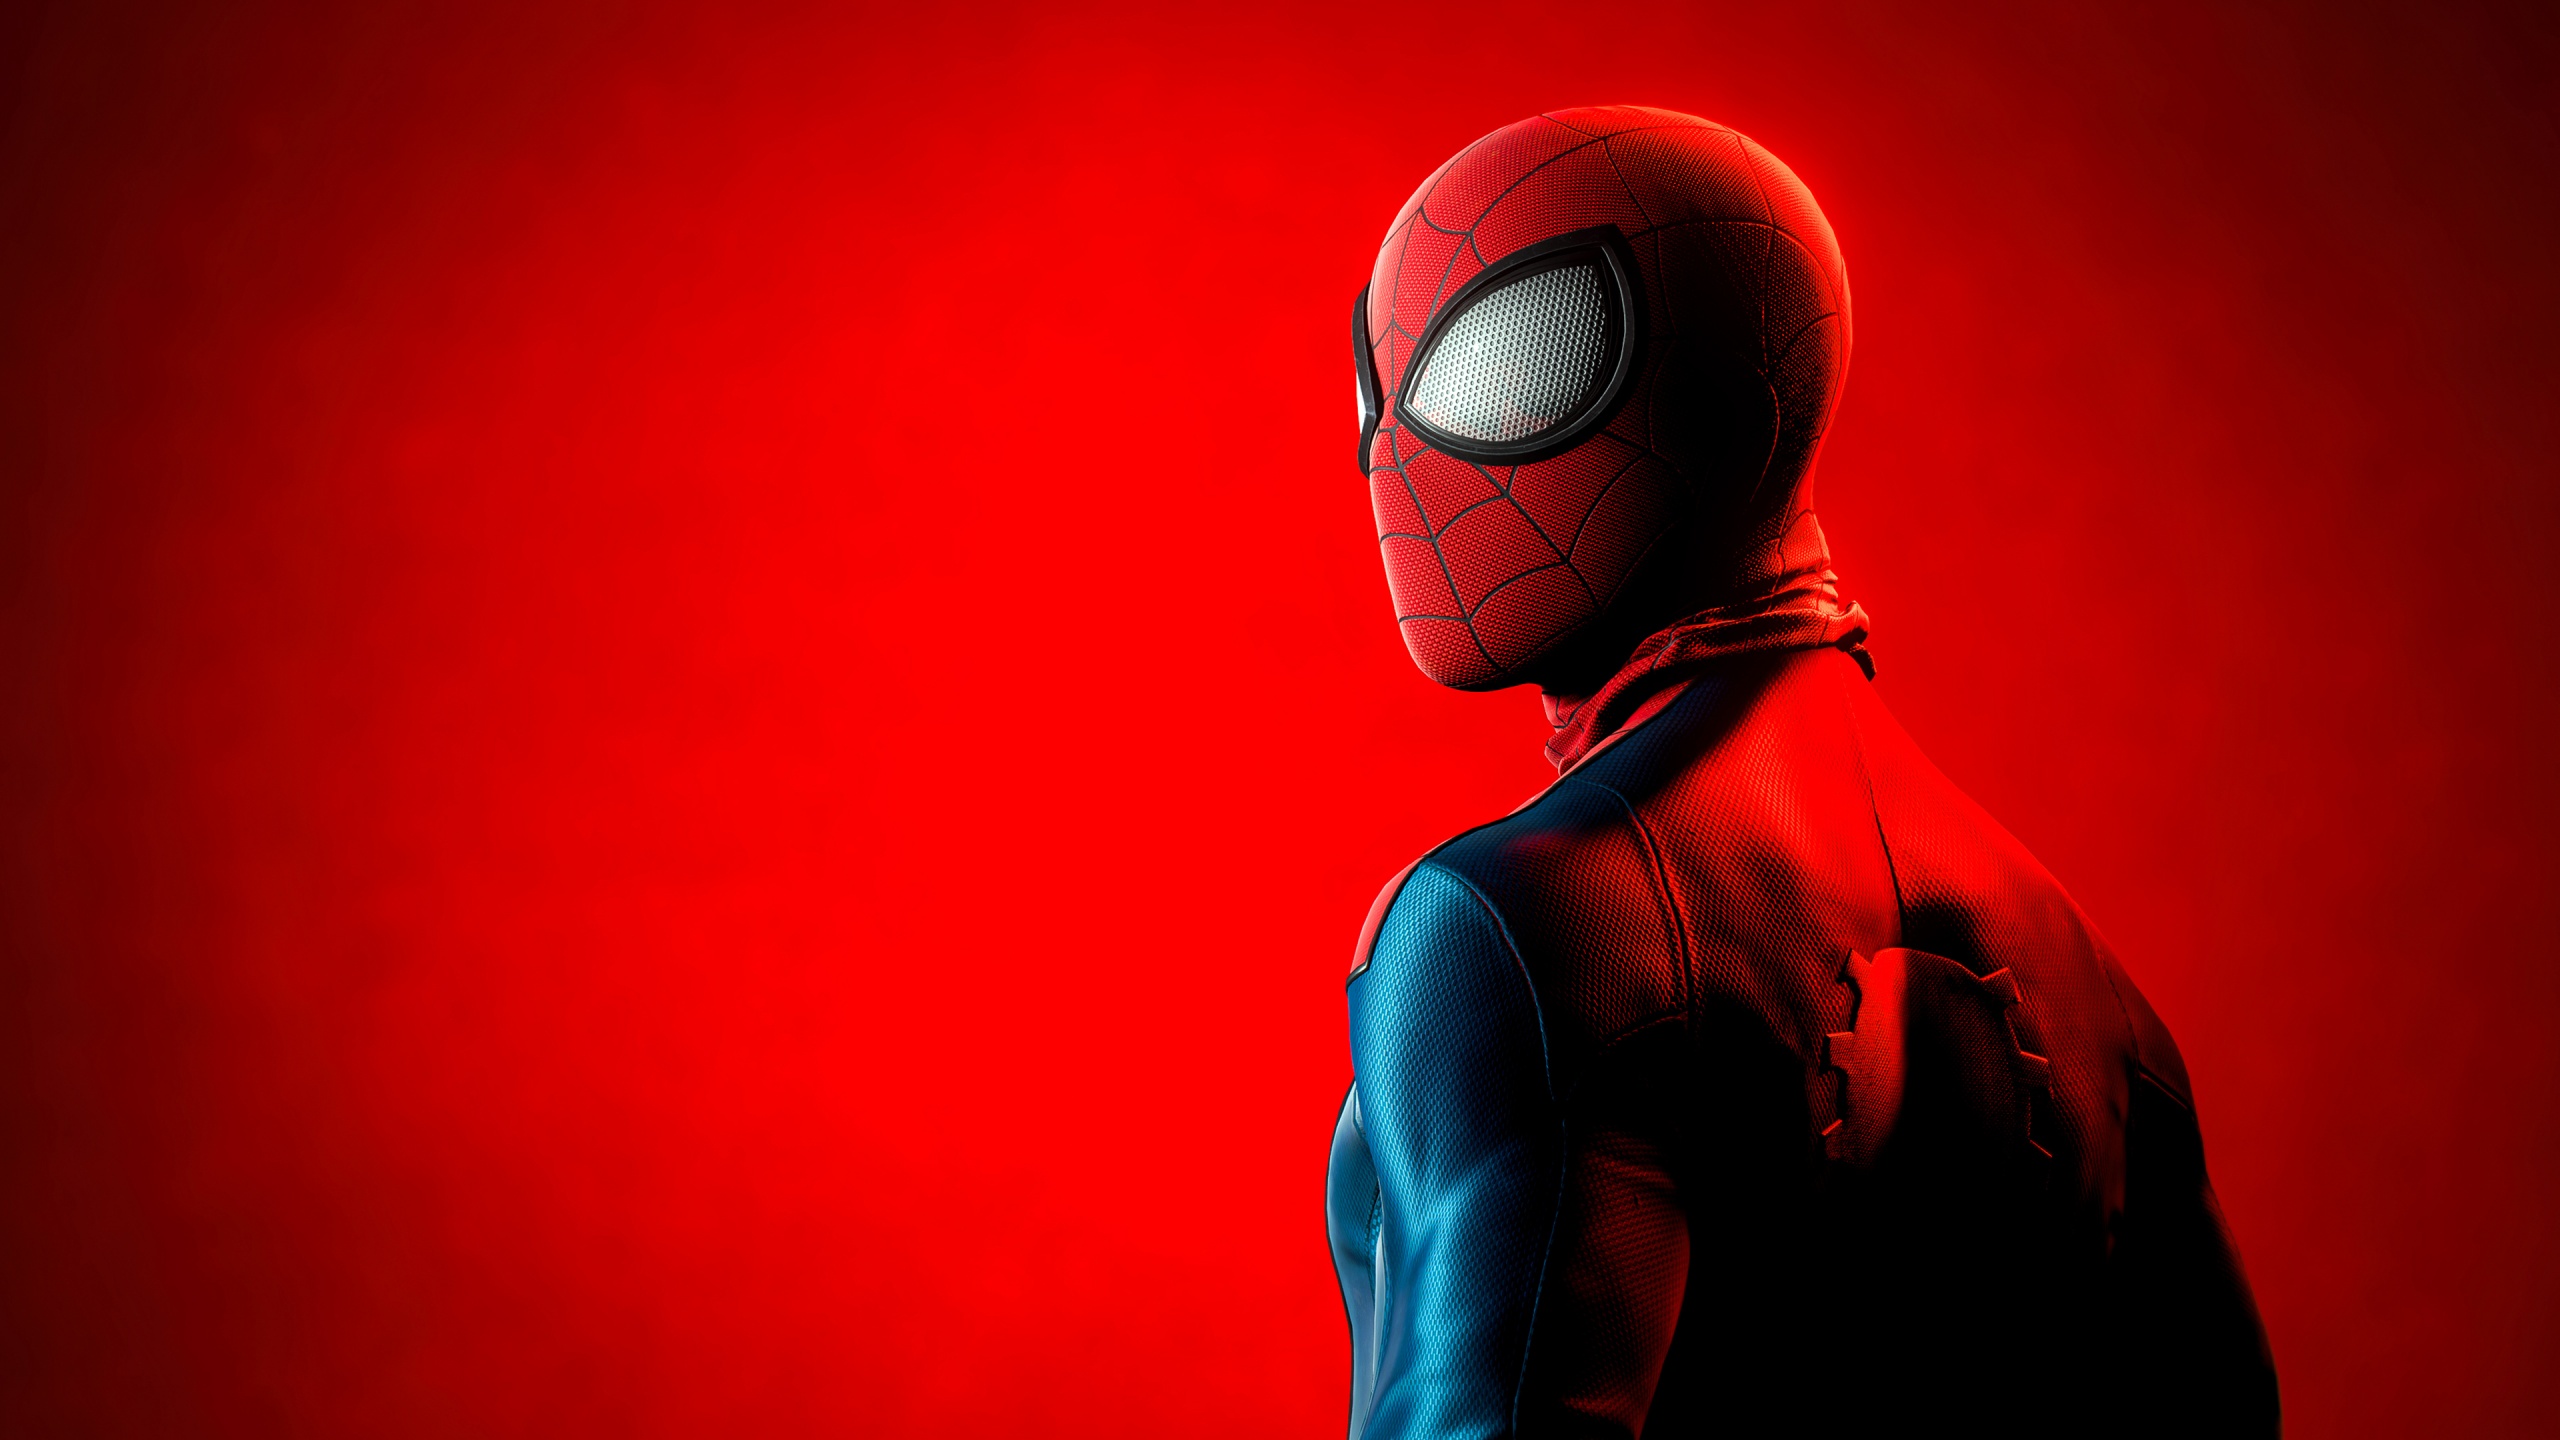 Hình nền Spider-Man 4K: Nếu bạn đang tìm kiếm những hình nền tuyệt đẹp để thể hiện tình yêu của mình đối với Spider-Man, trang trí cho máy tính hoặc điện thoại của bạn, đồng thời cập nhật công nghệ 4K thì đừng bỏ lỡ bộ sưu tập chất lượng cao này nhé!